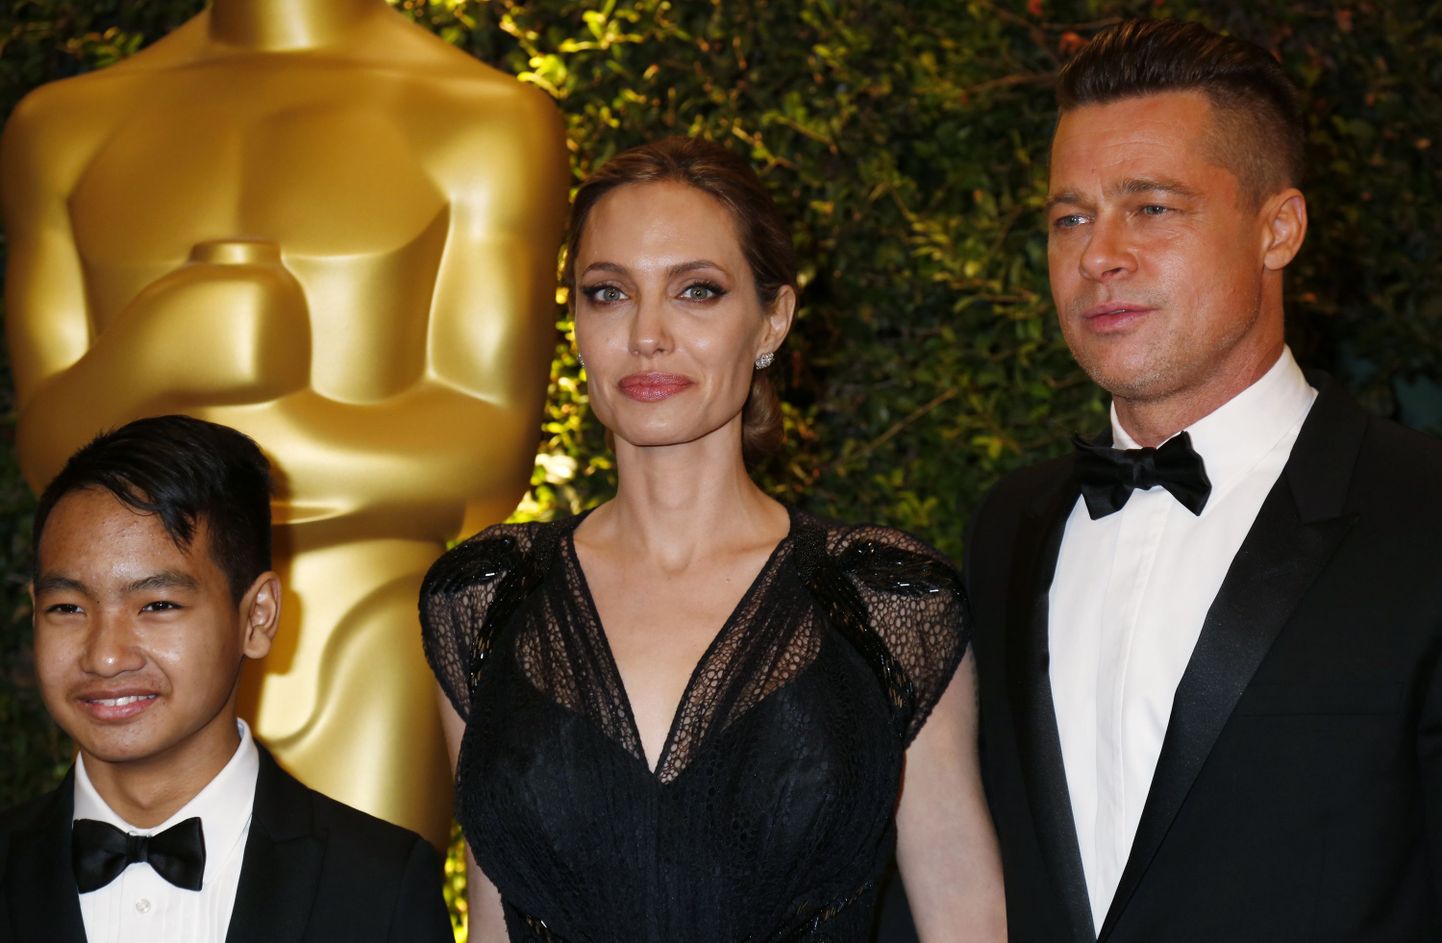 Анджелина Джоли, ее гражданский супруг Брэд Питт и их приемный сын Мэддокс